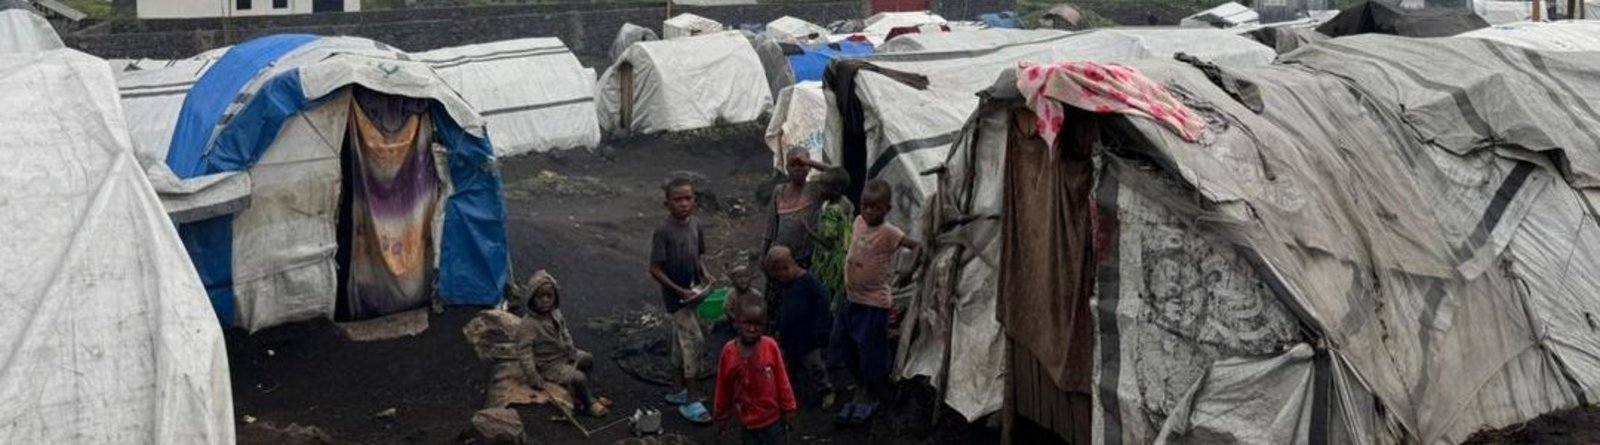 Vertriebenenlager in der Nähe von Goma Demokratische Republik Kongo